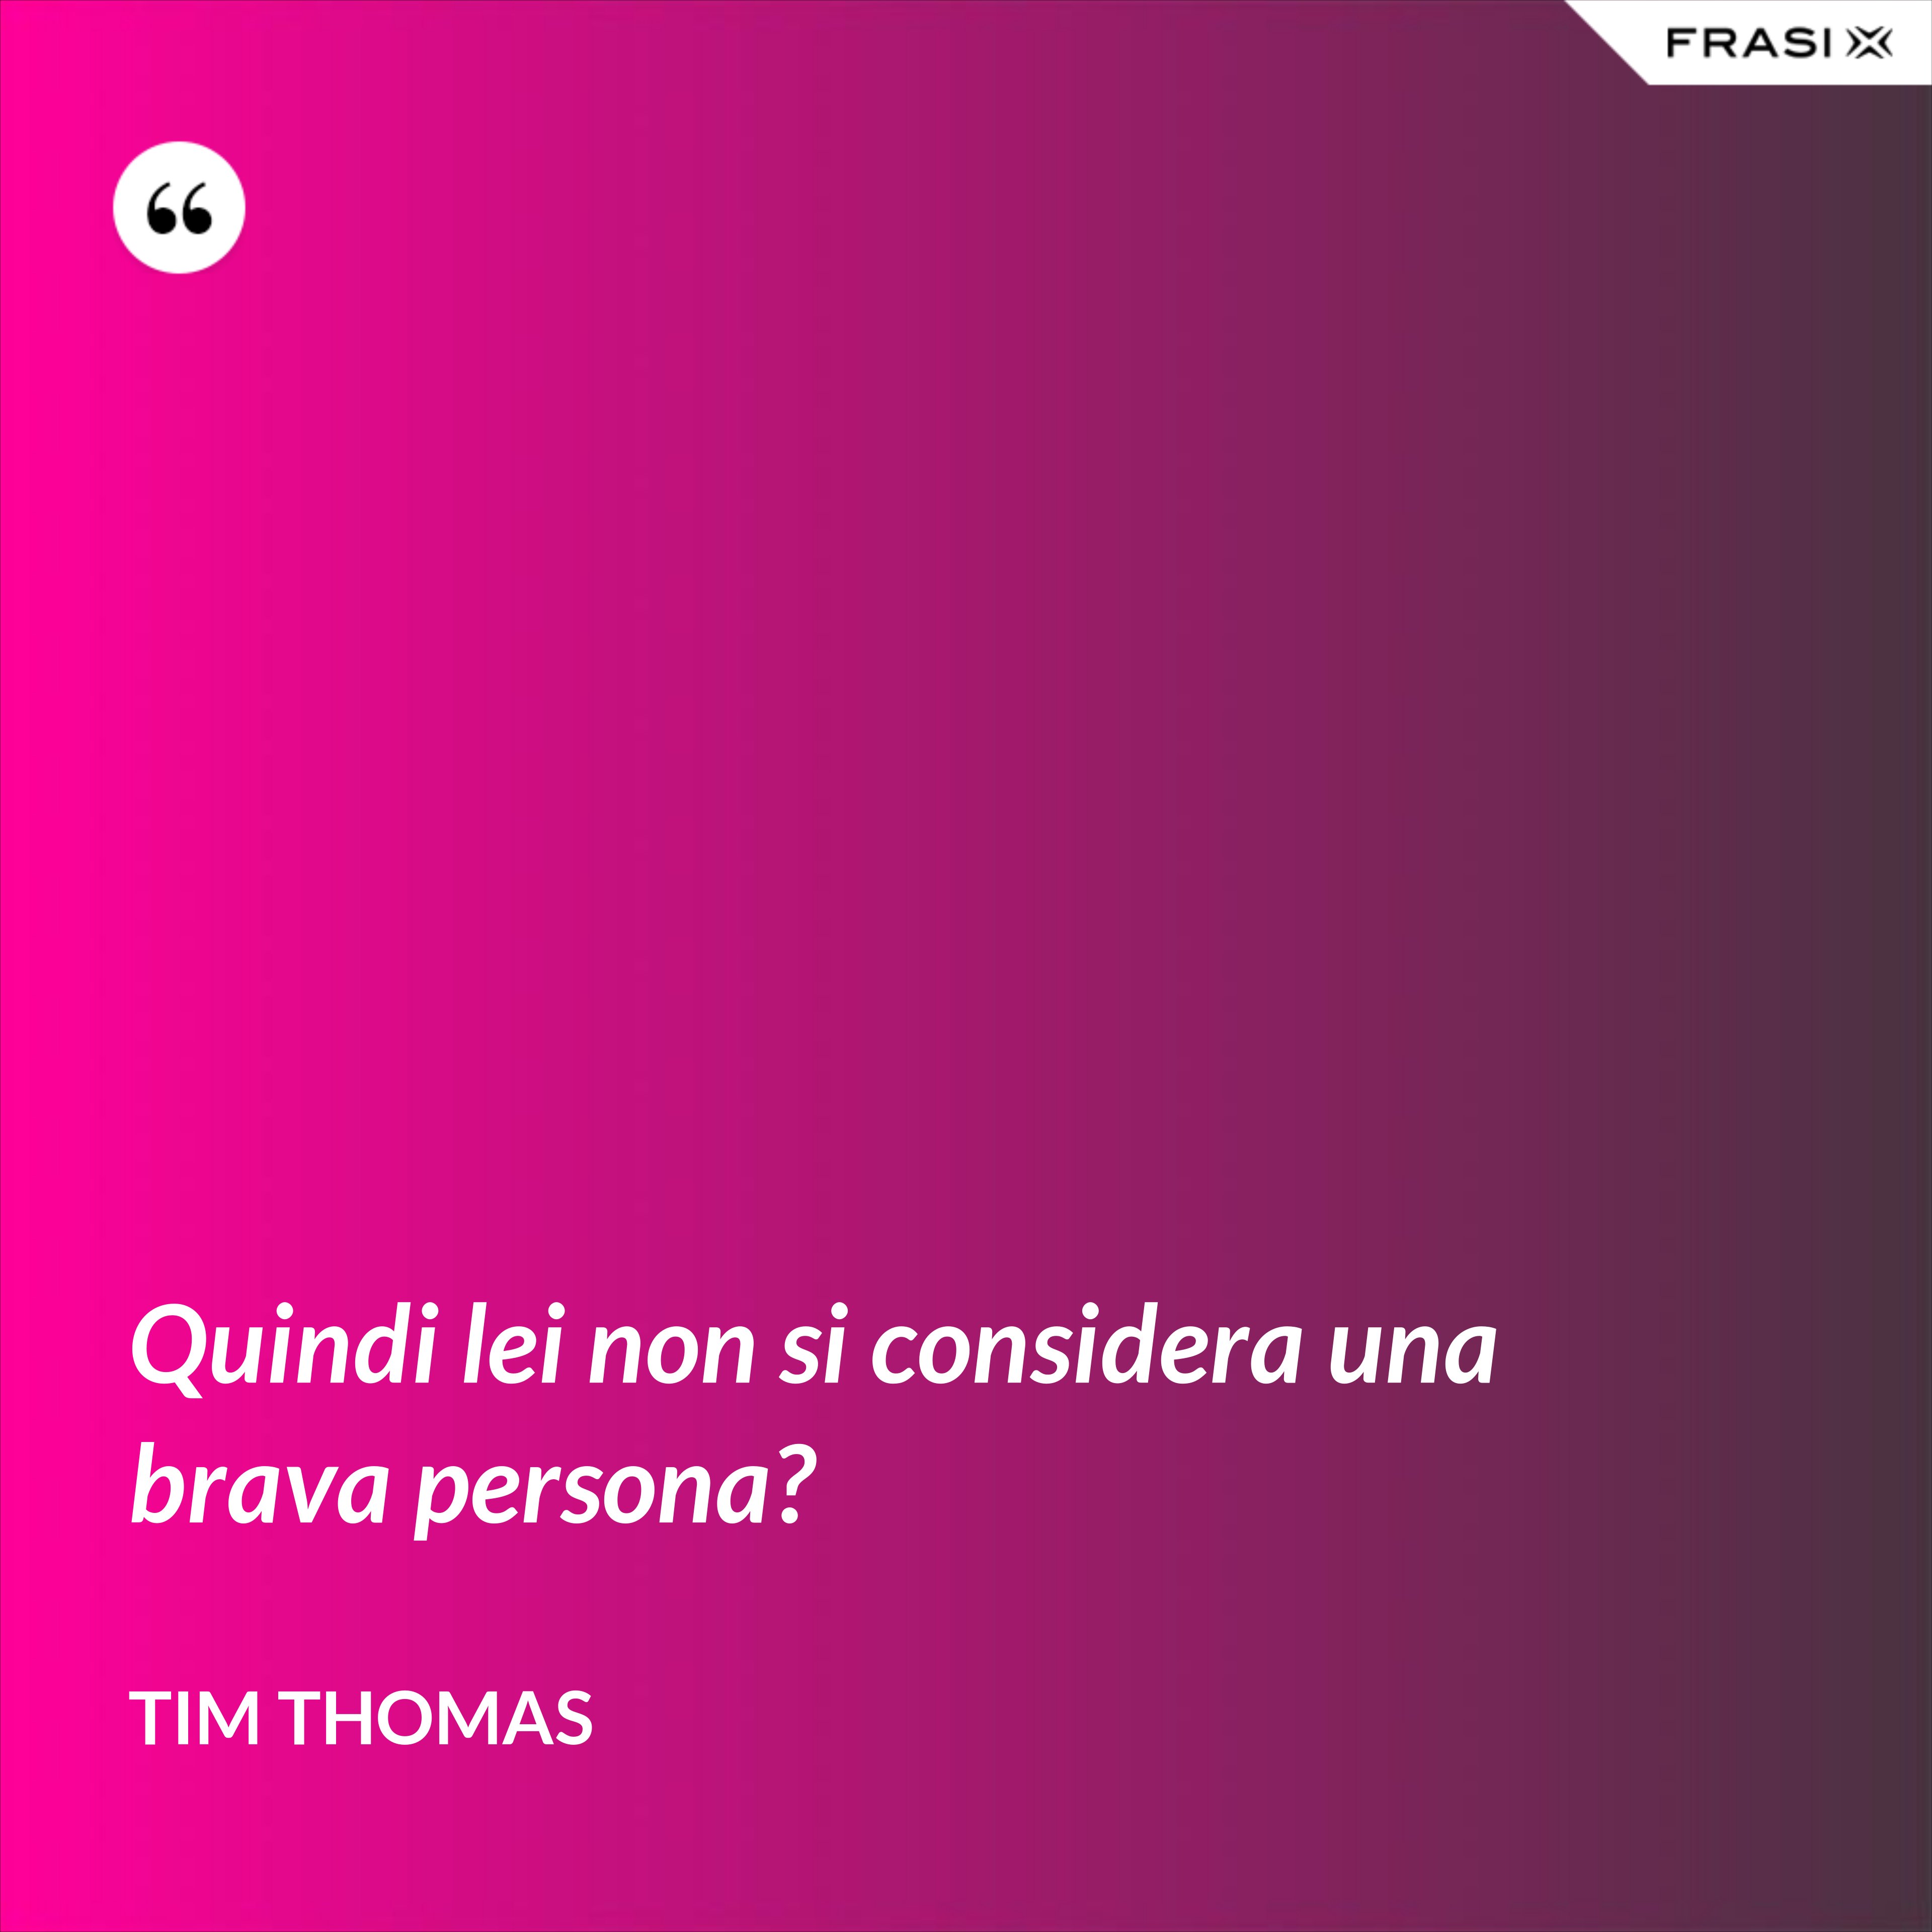 Quindi lei non si considera una brava persona? - Tim Thomas